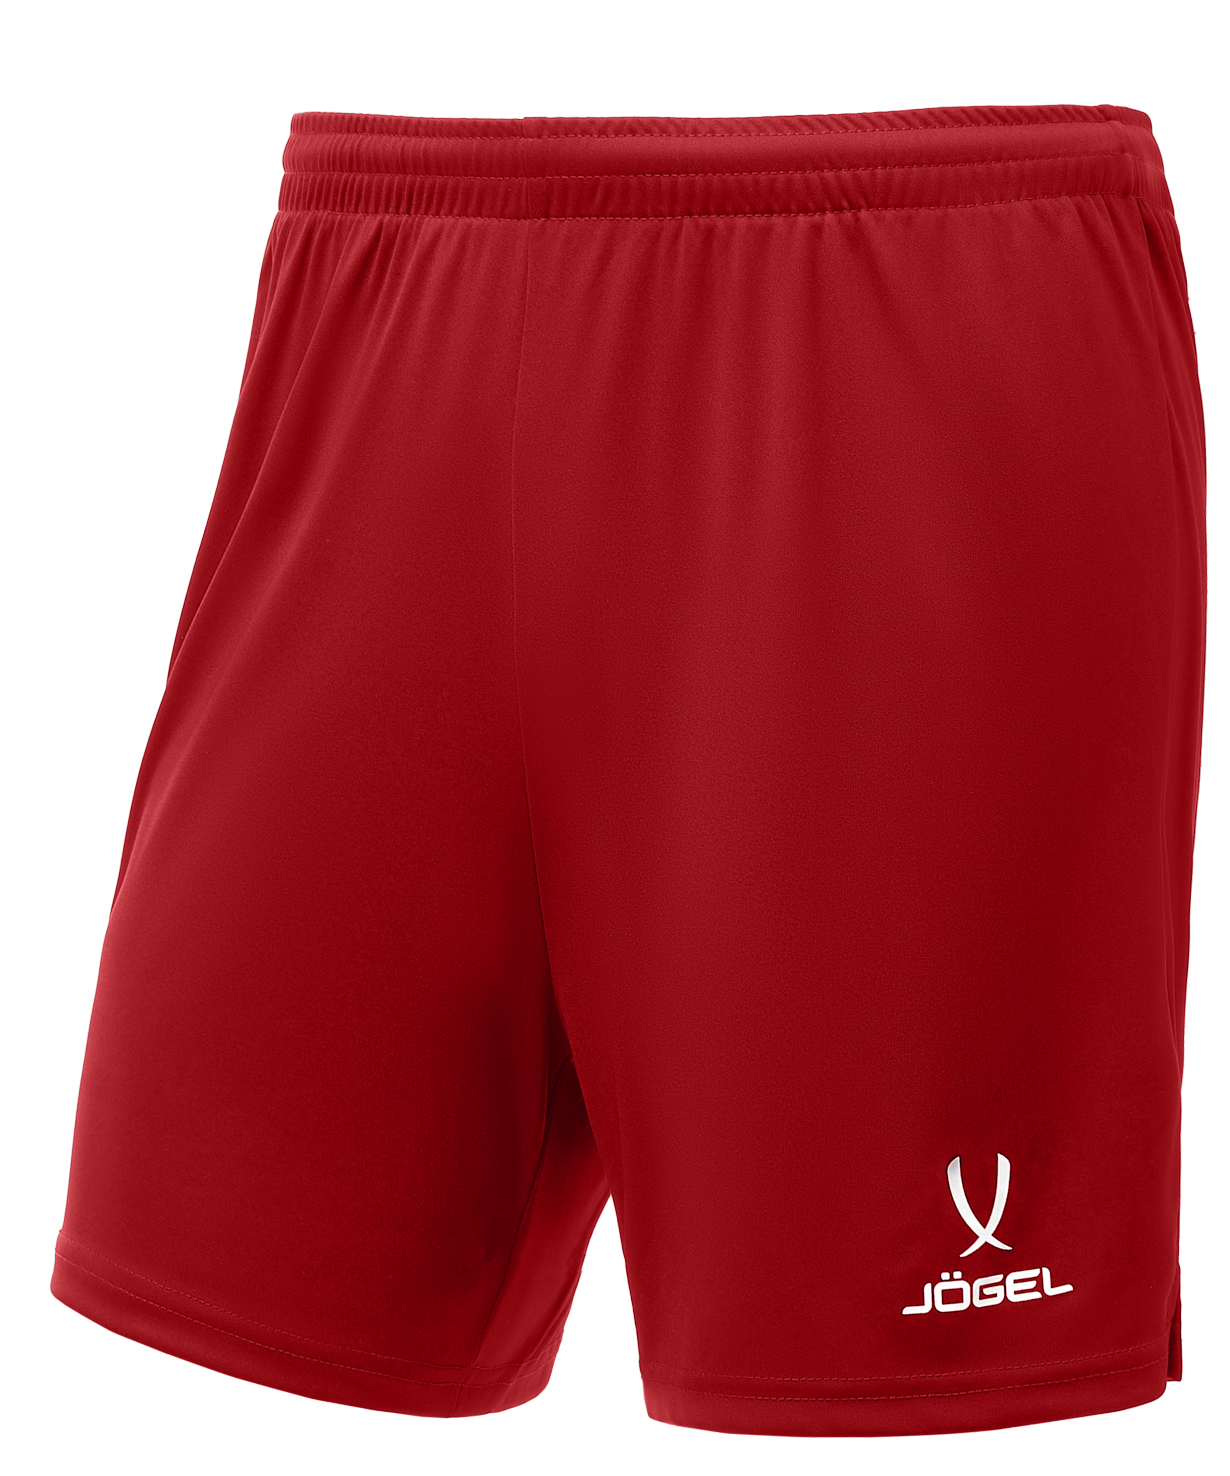 Шорты для волейбола. Шорты Jogel размер XS, красный. Шорты волейбольные валберис. Волейбольные шорты мужские. Шорты для волейбола мужские.